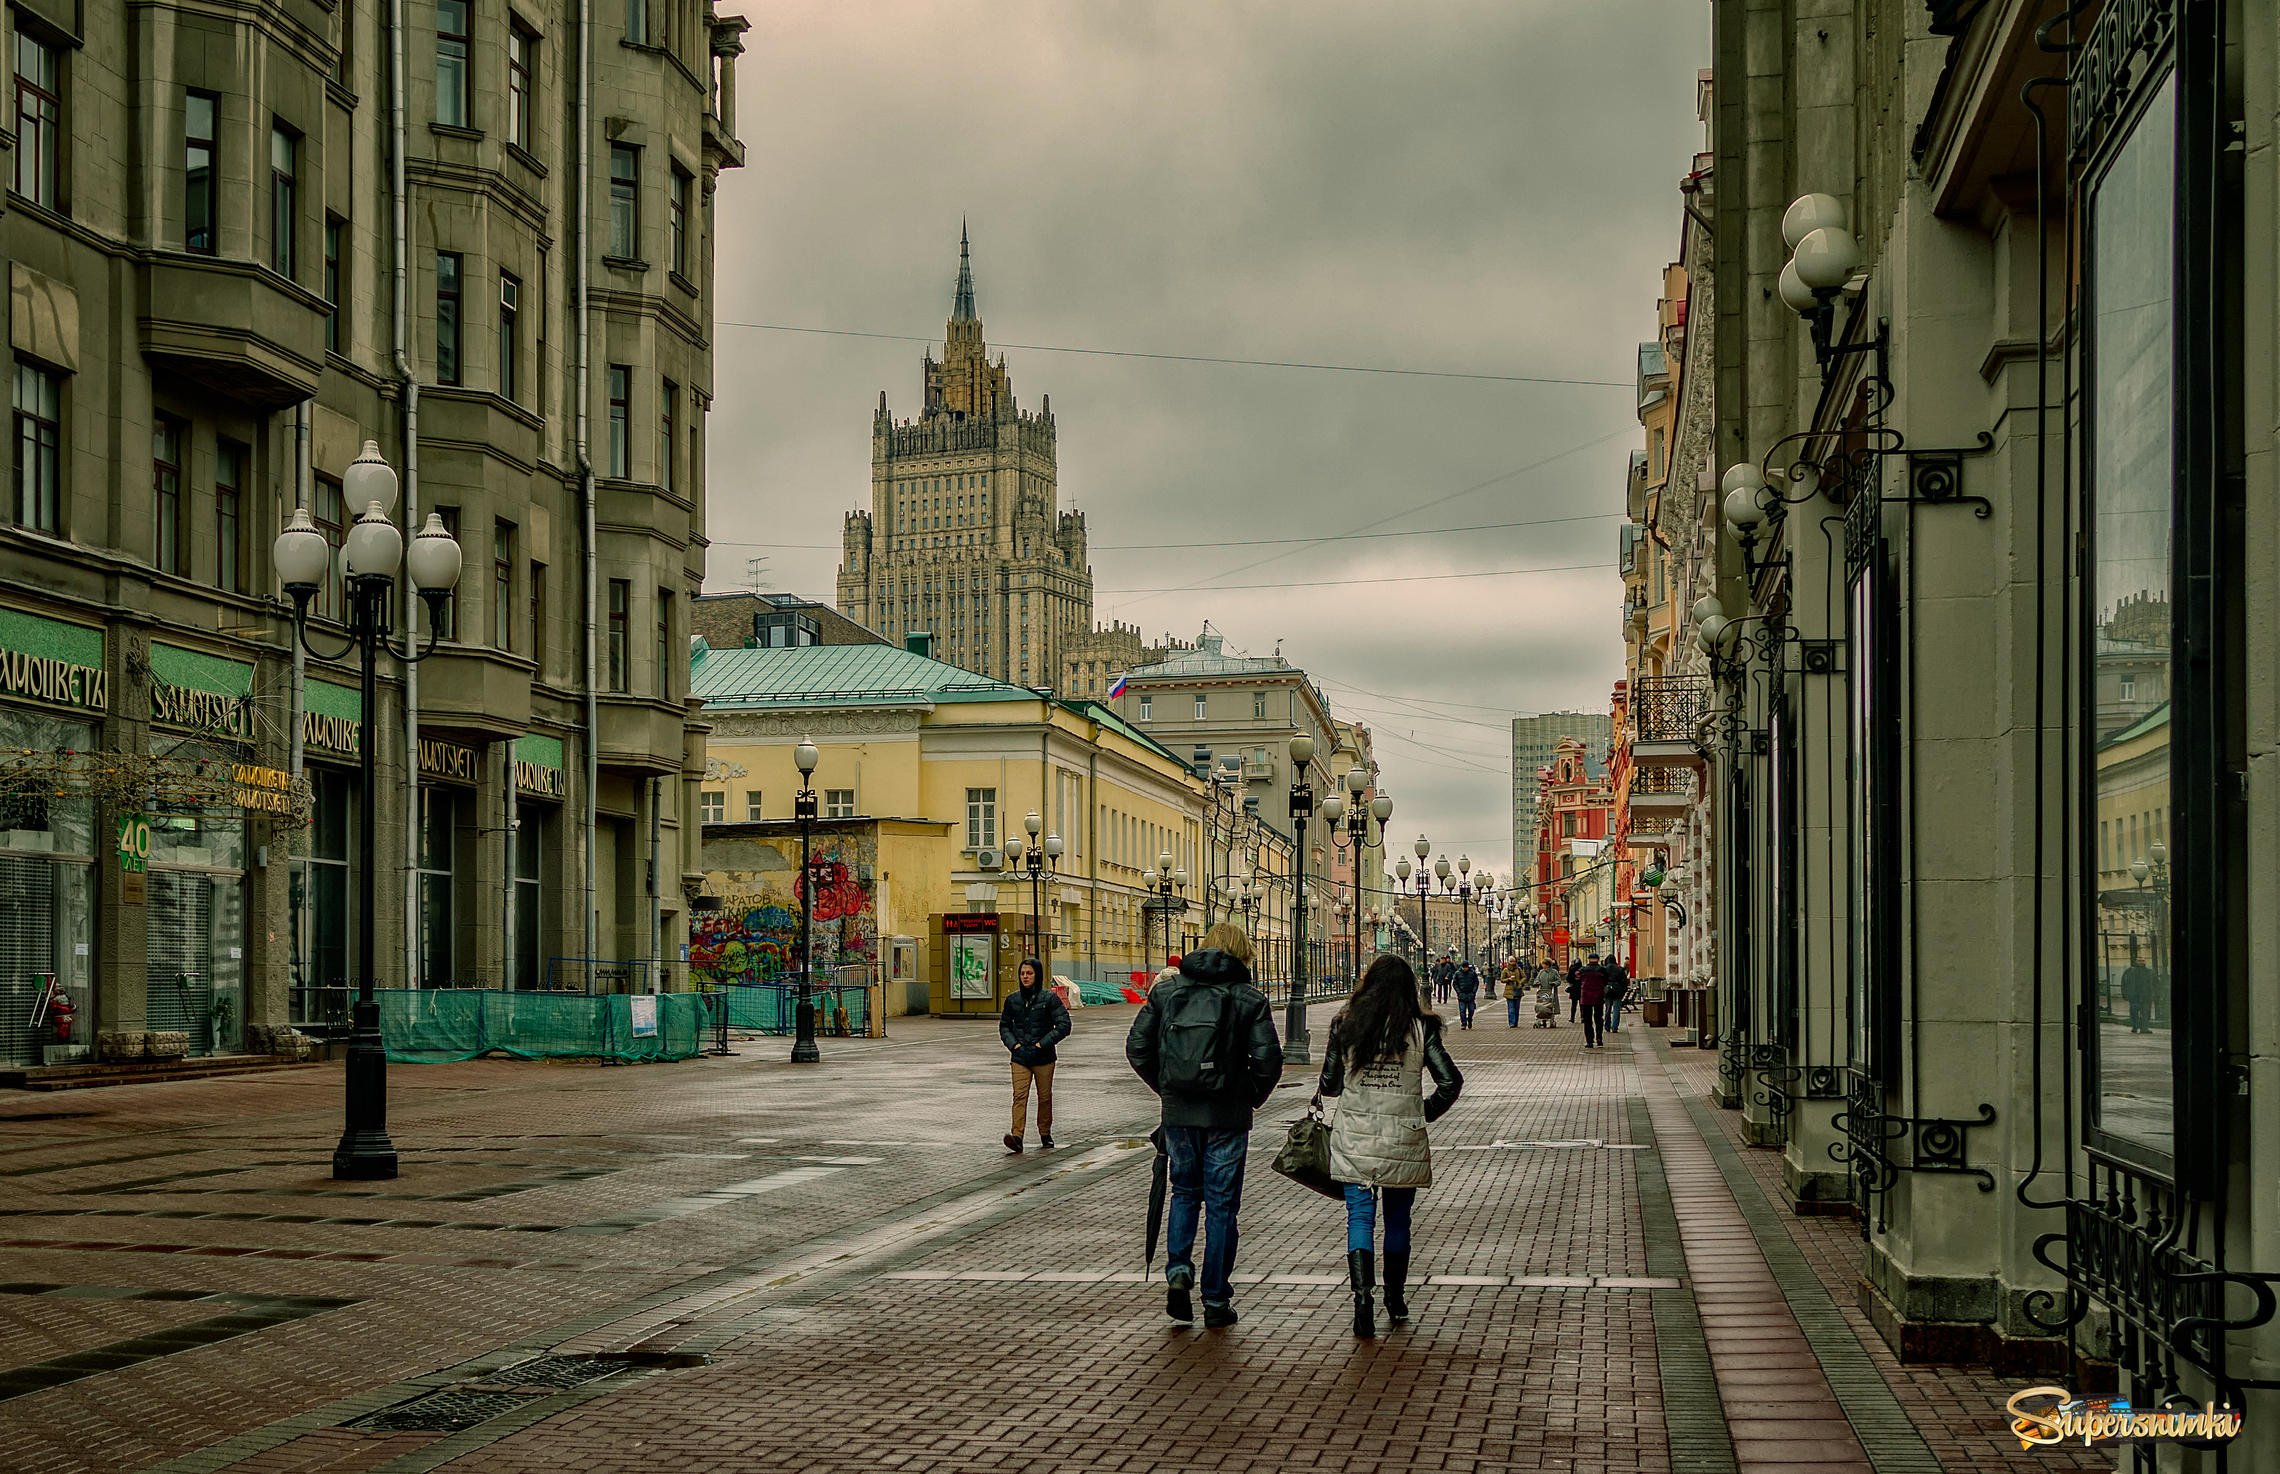 Арбатская улица москва. Улица Арбат в Москве. Старый Арбат и новый Арбат. Старый Арбат пешеходная улица.